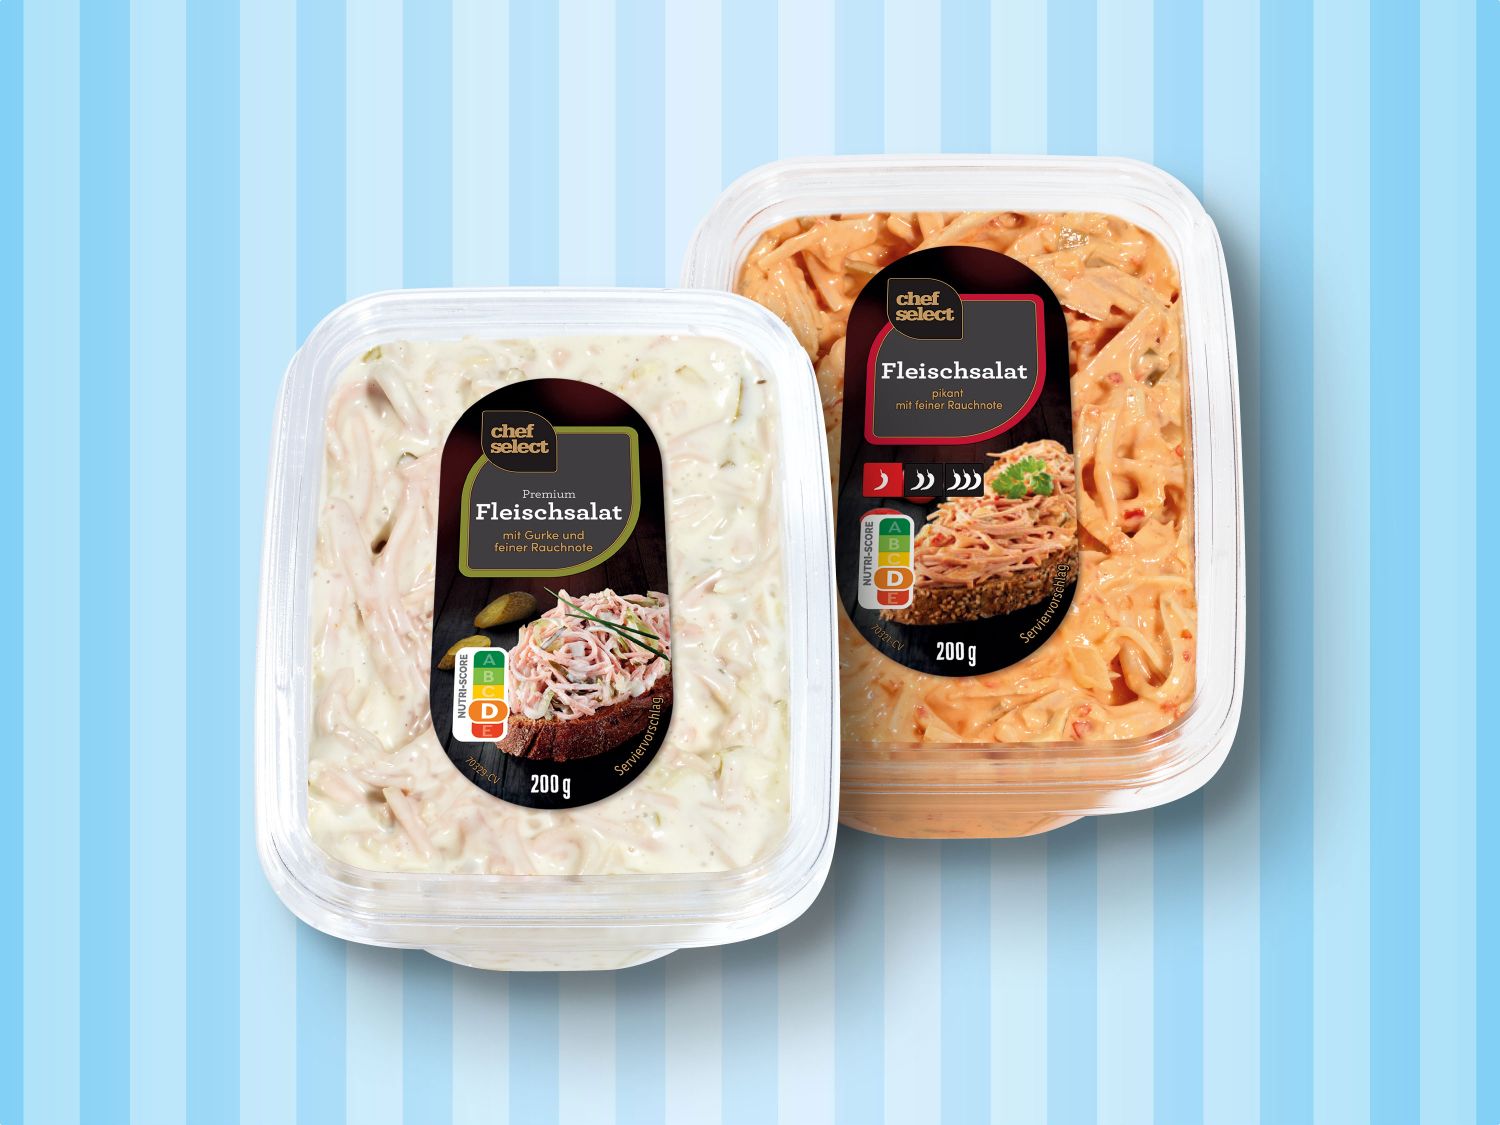 Chef - Select Fleischsalat Premium Deutschland Lidl